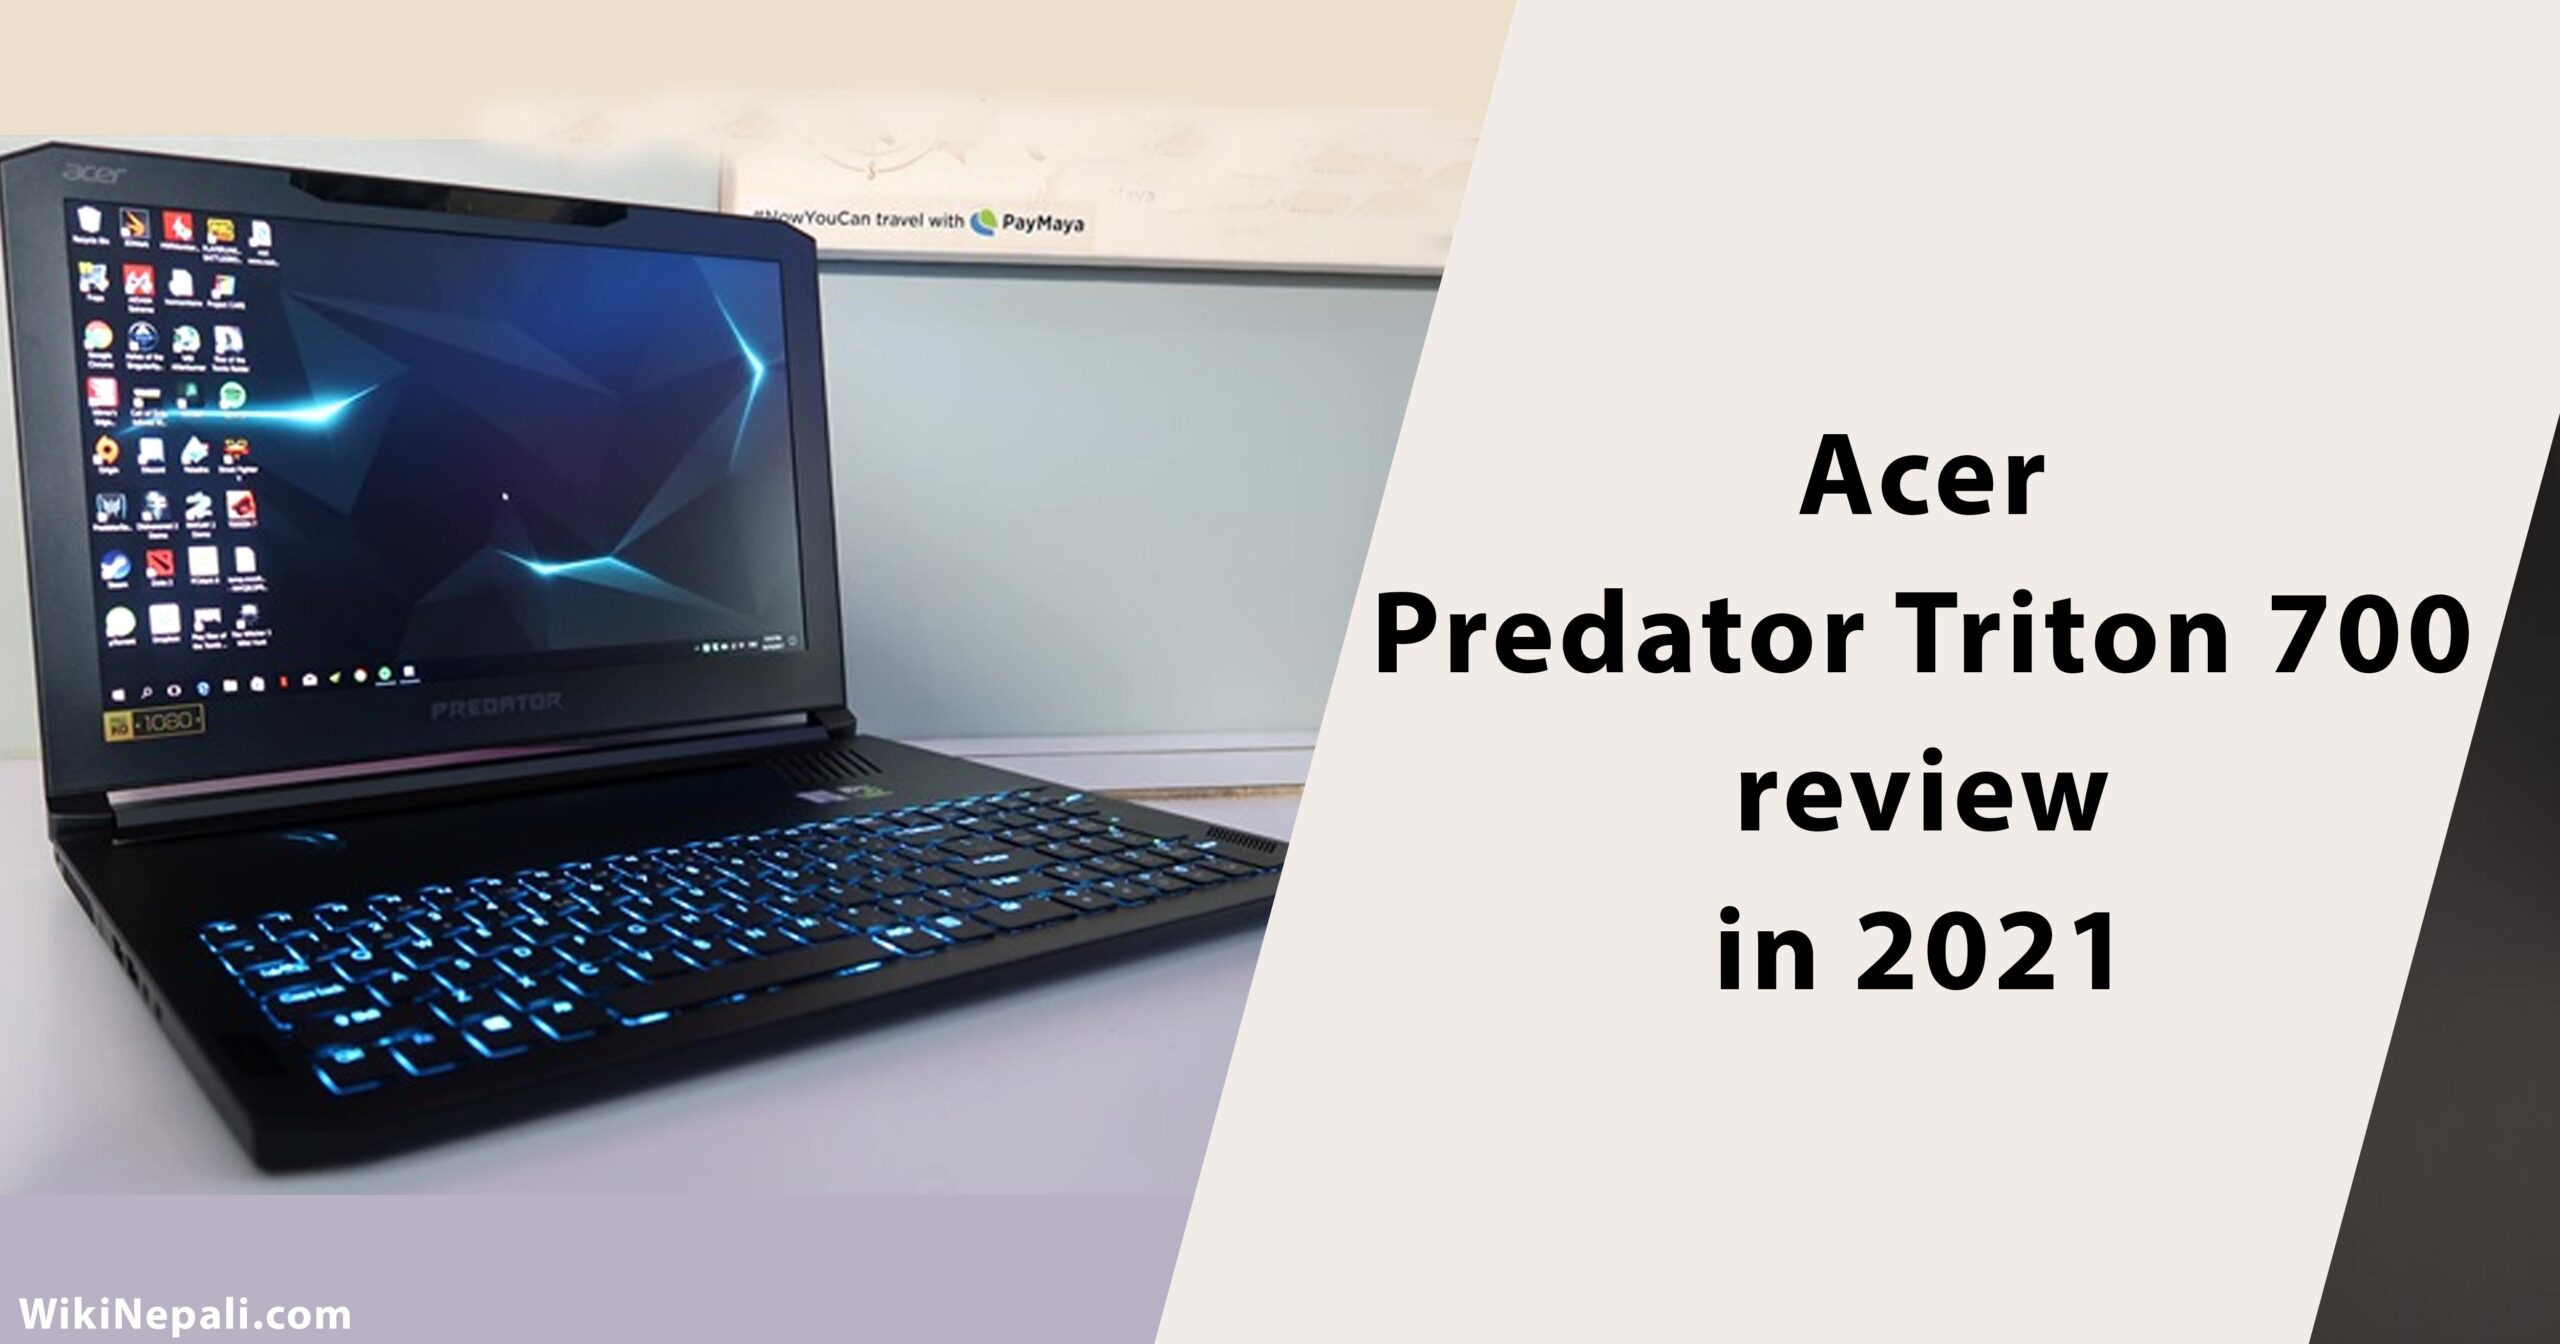 Acer Predator Triton 700 review